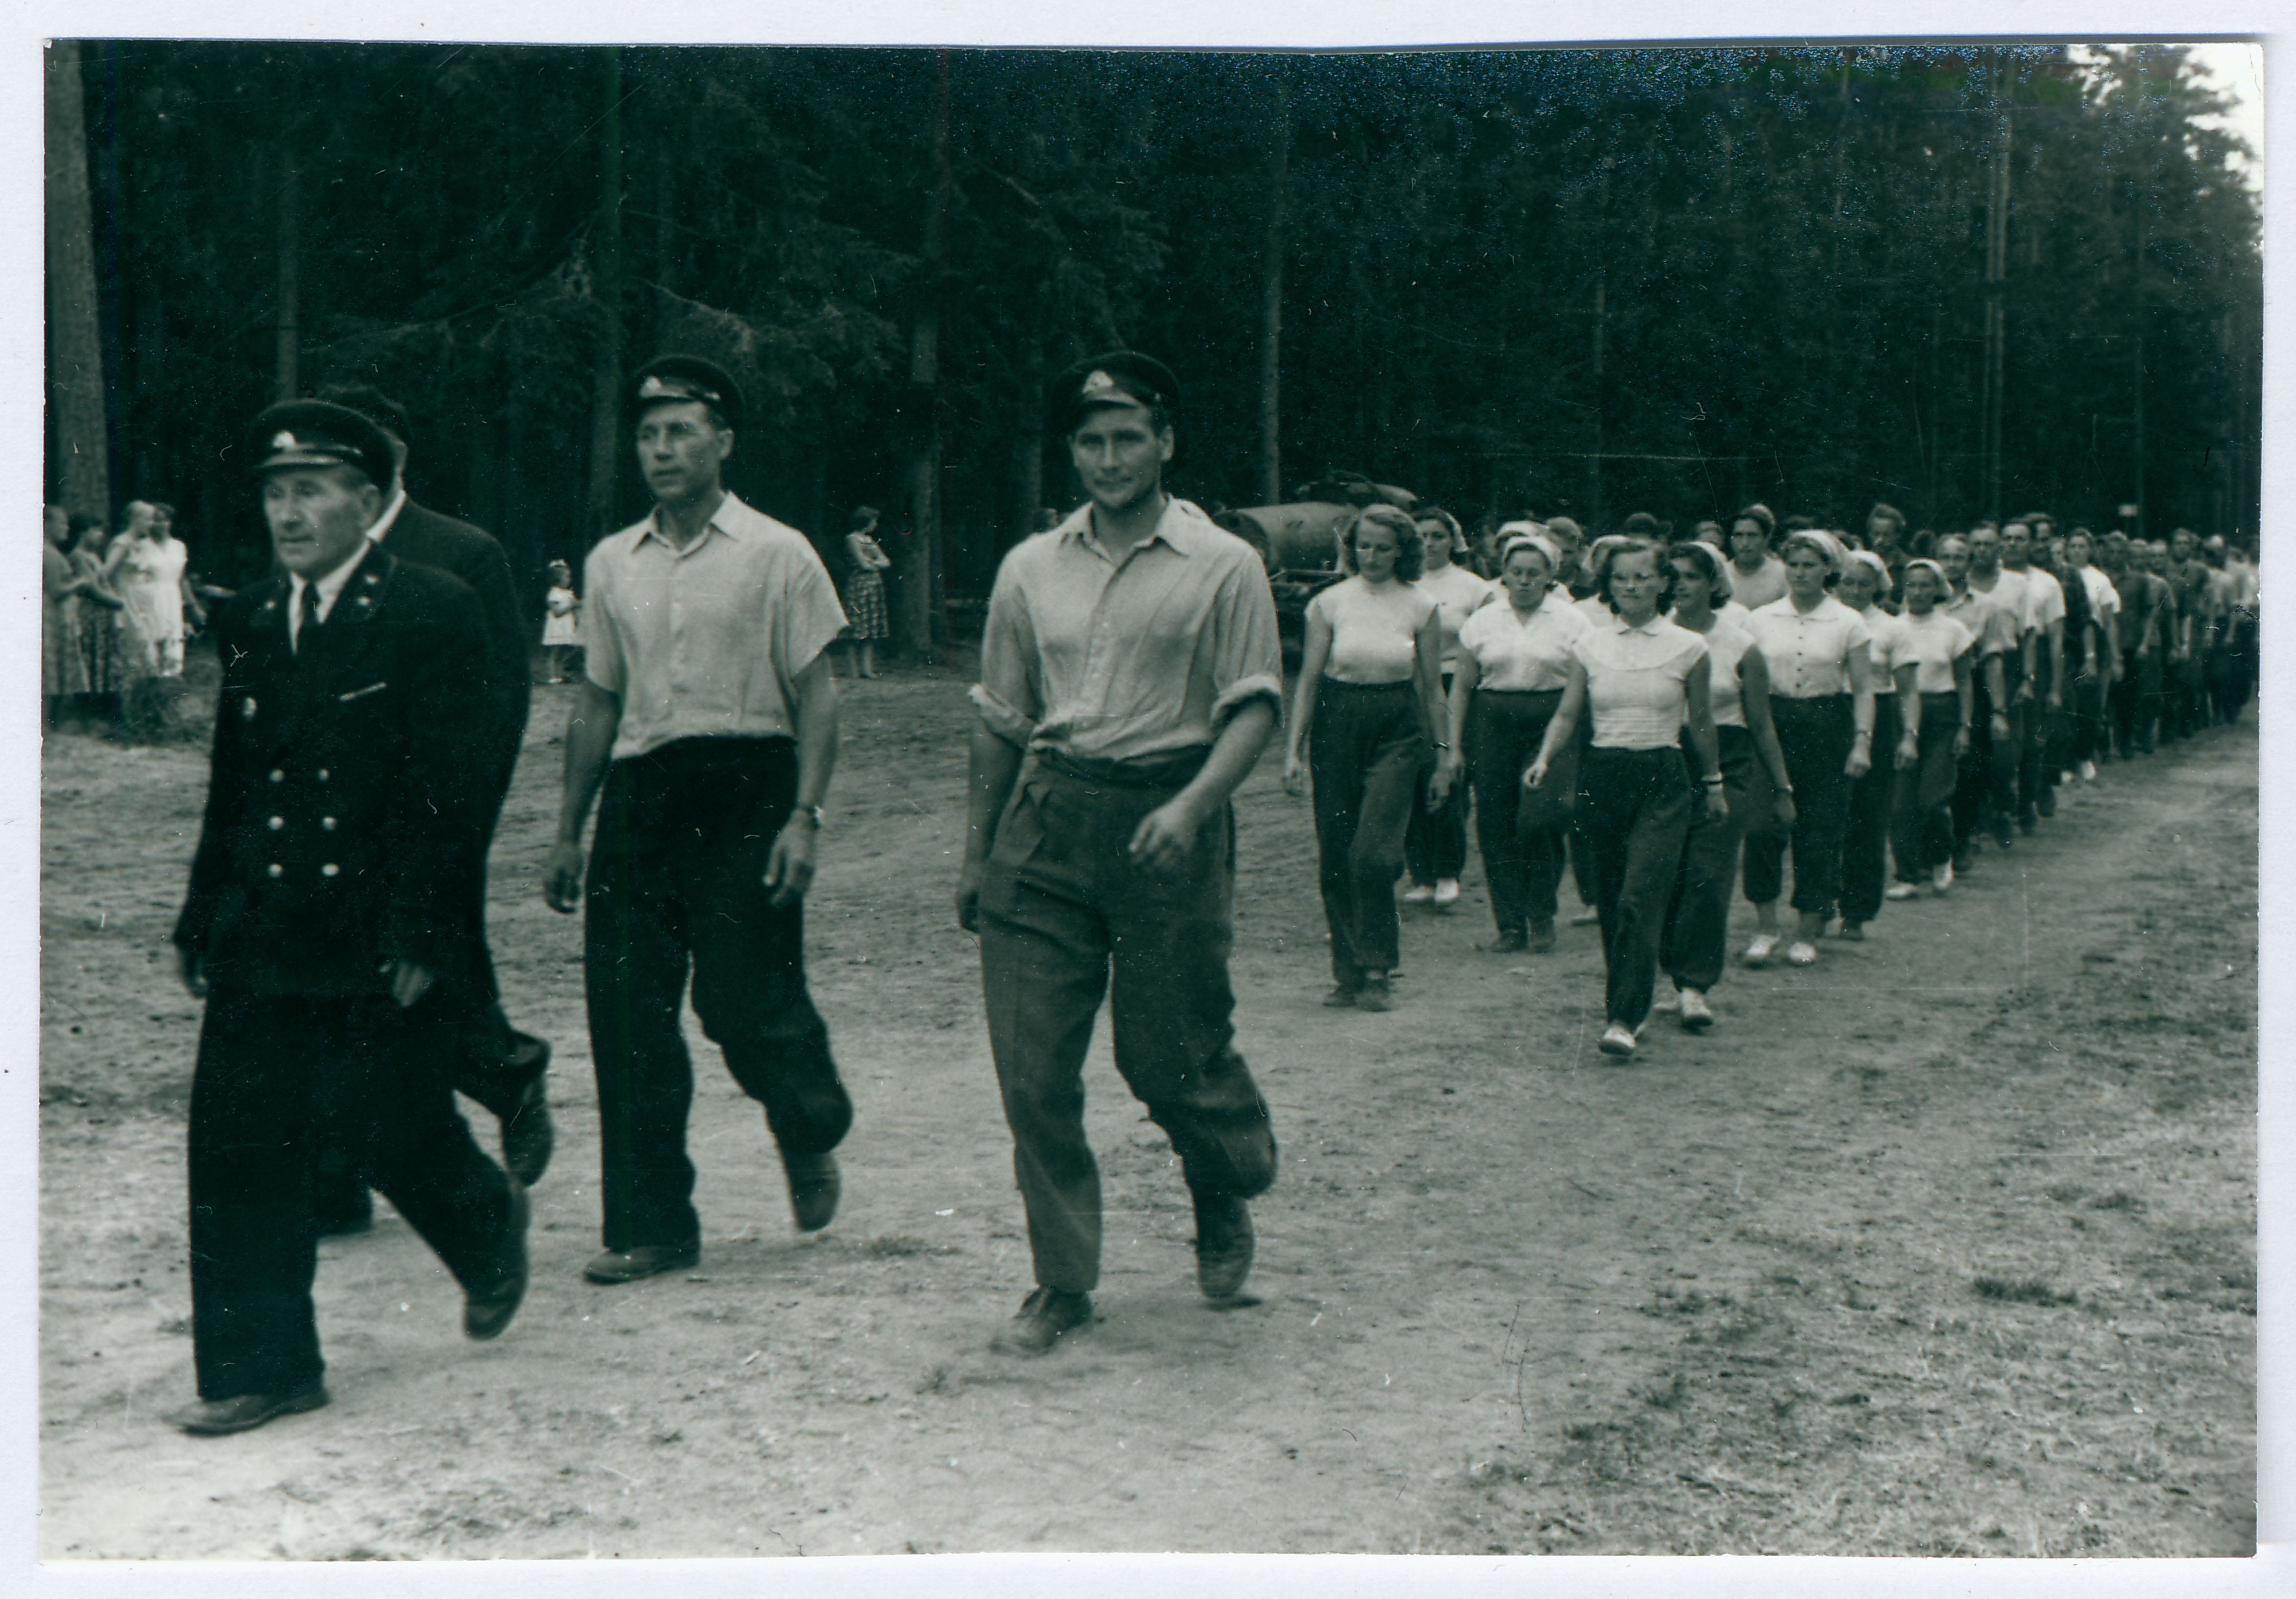 Elva VTÜ tuletõrjujad marssimas võistlusplatsile 1959